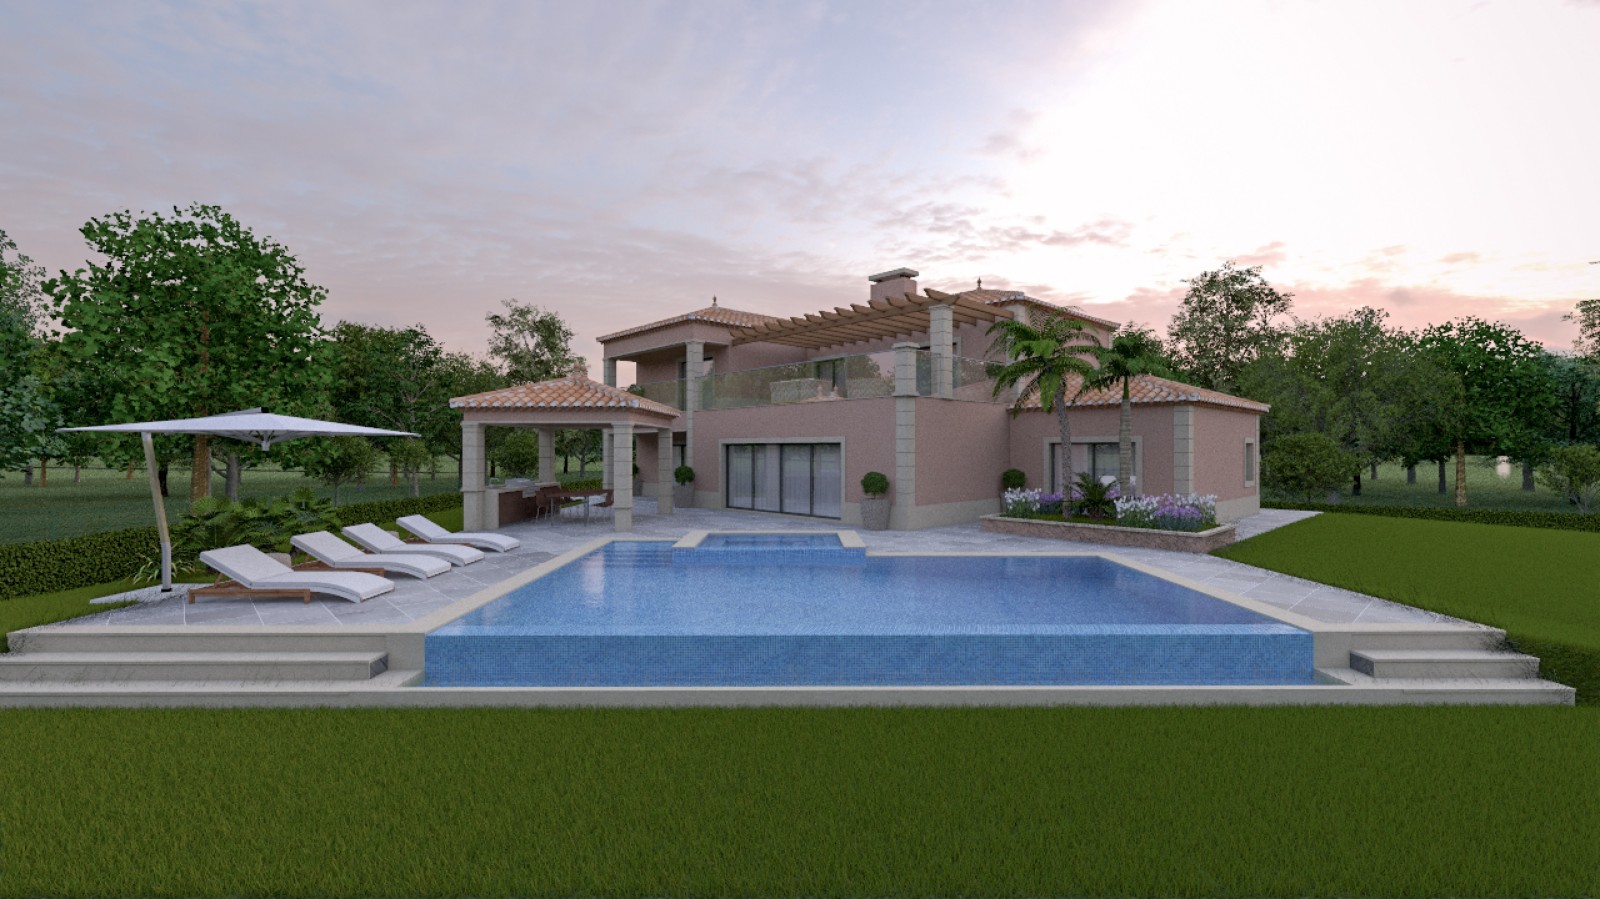 Moradia V4 com piscina, para venda em Portimão, Algarve_231715